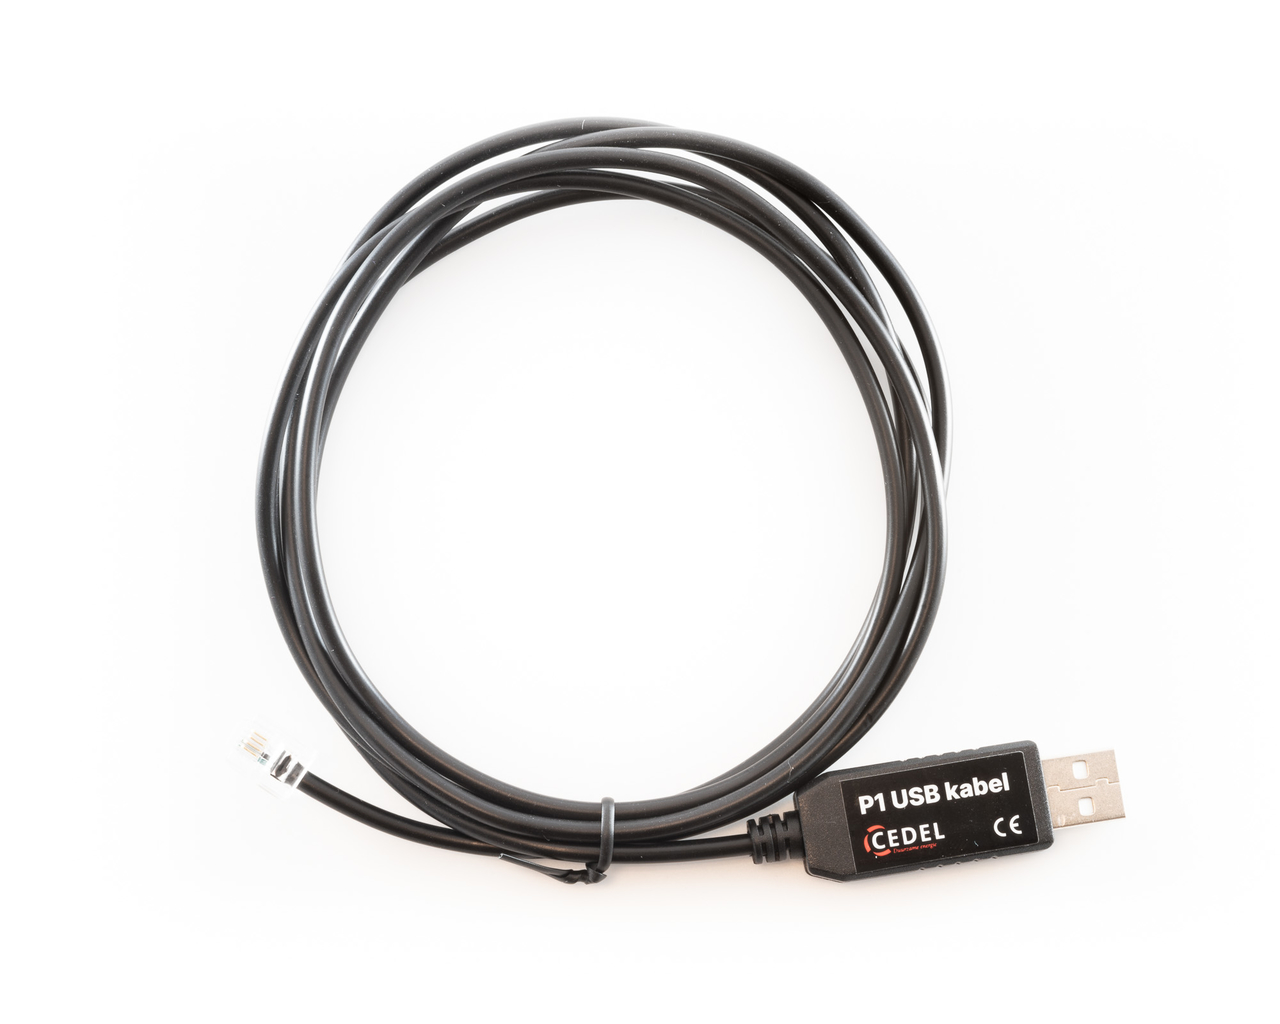 Herhaald datum Taille Slimme meter kabel - P1 USB - Cedel webshop